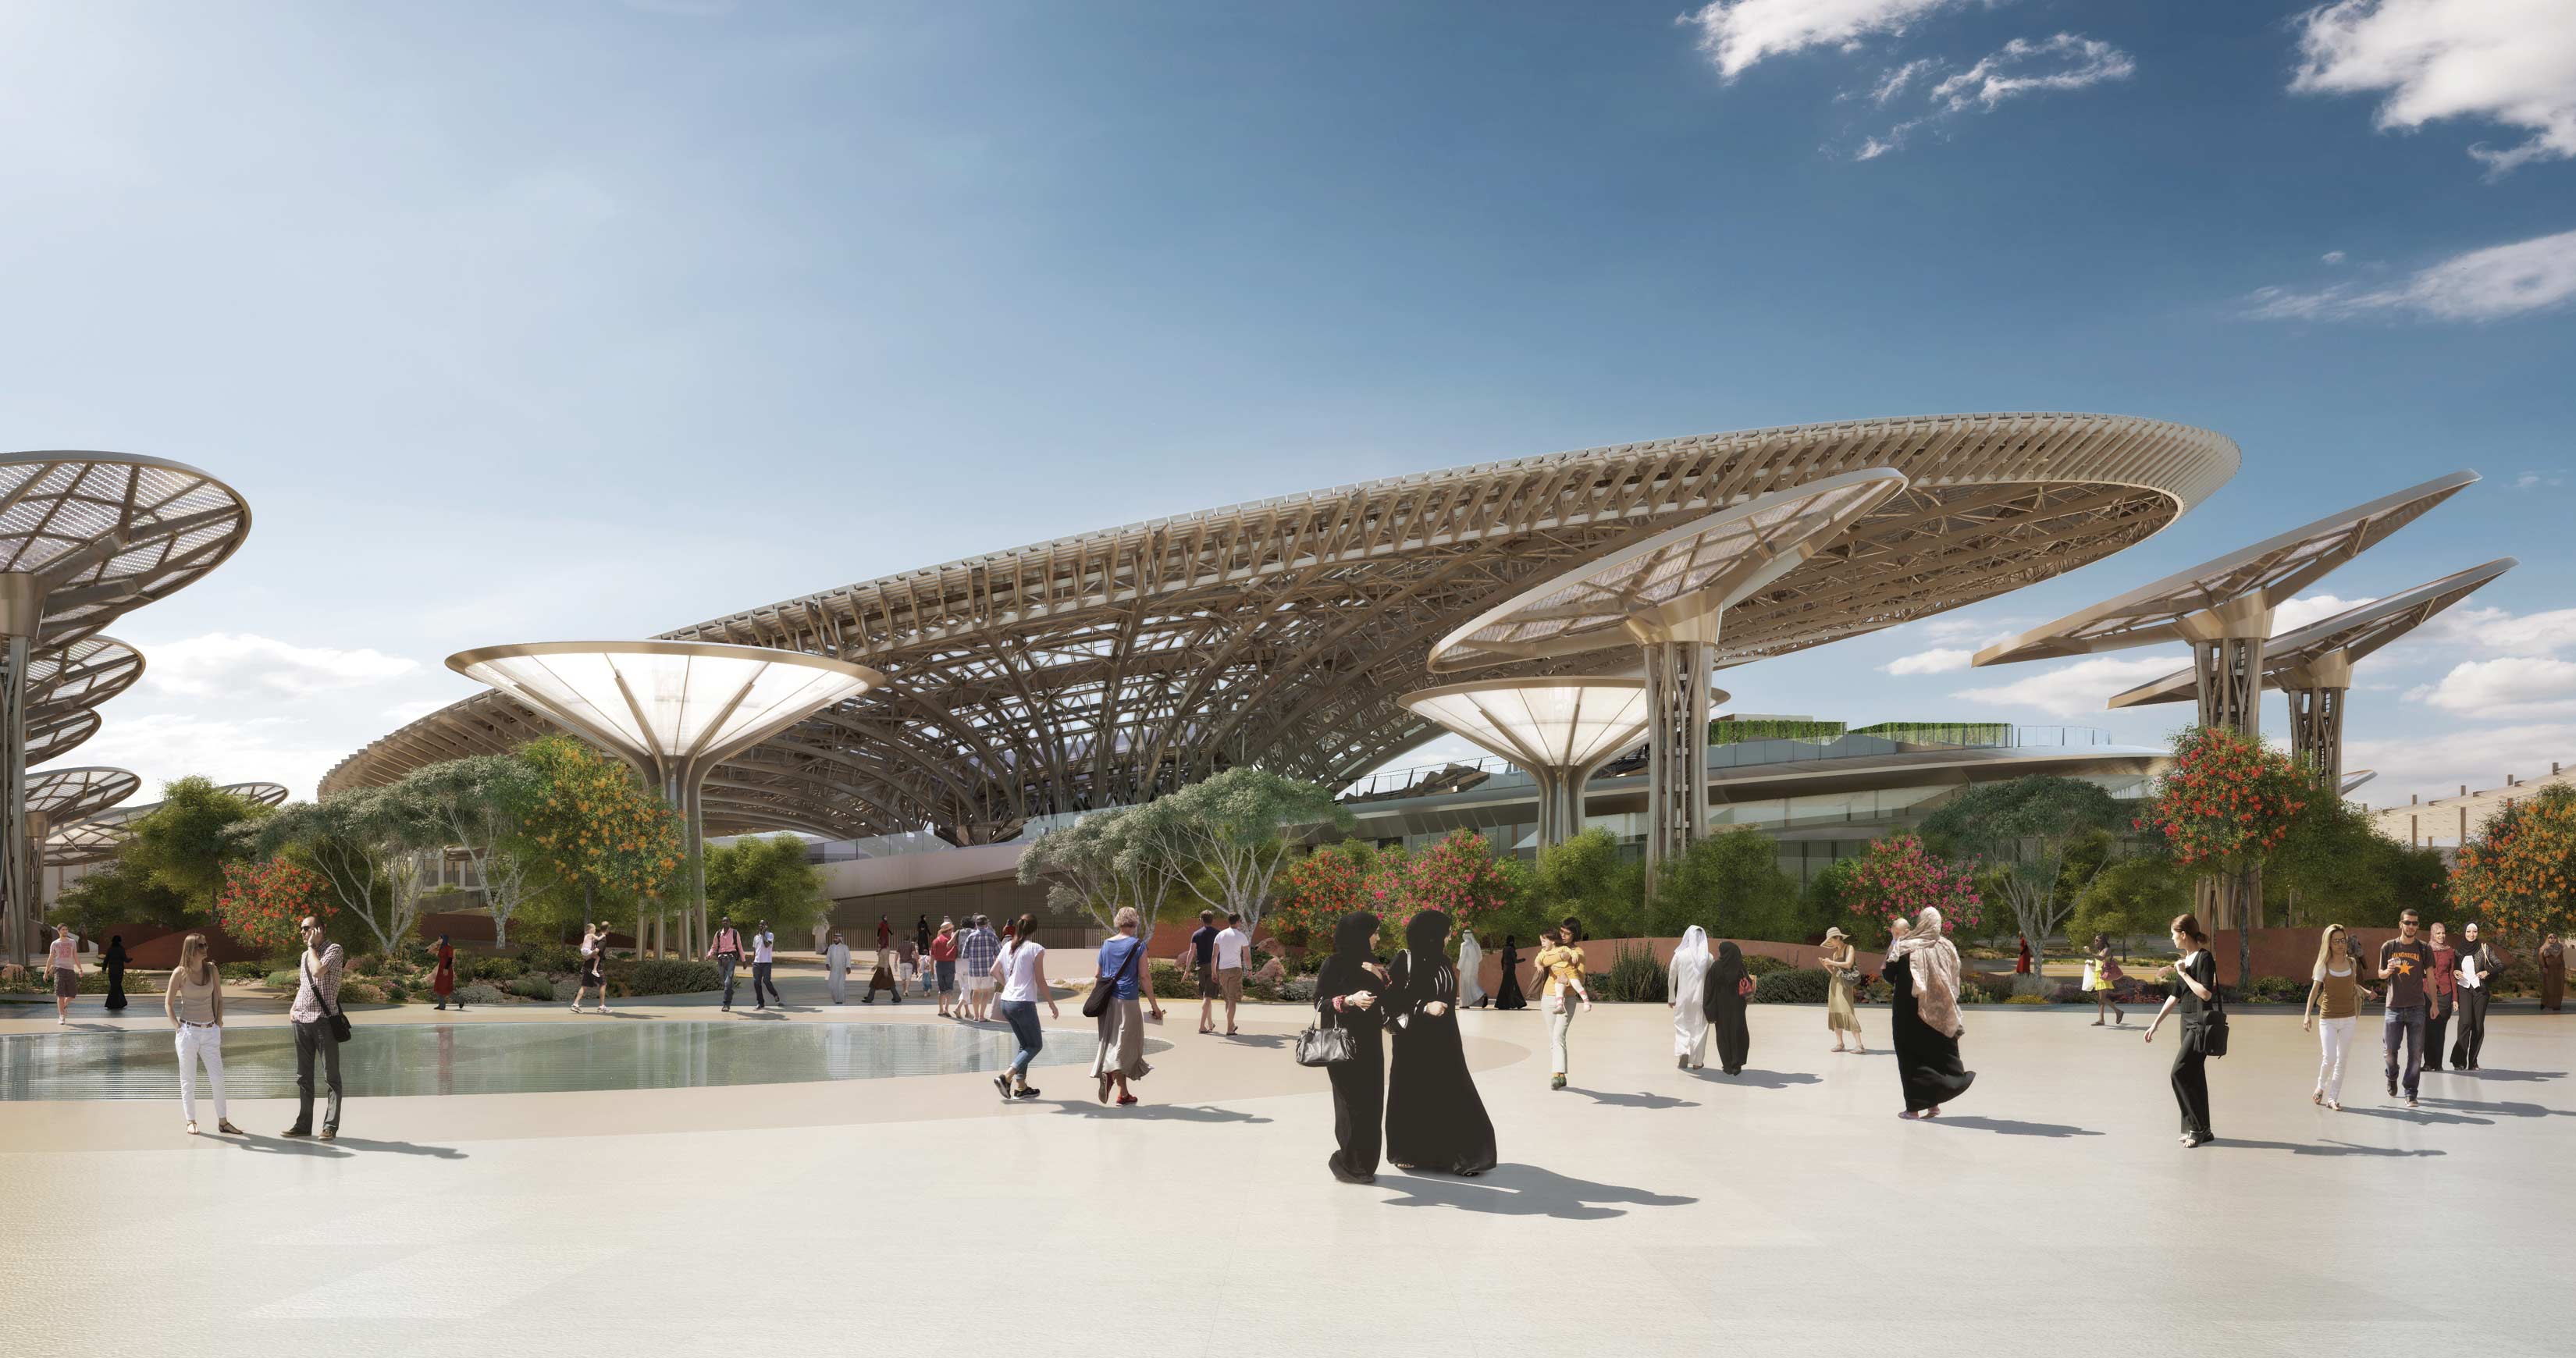 Expo 2020 Dubai has been officially postponed 